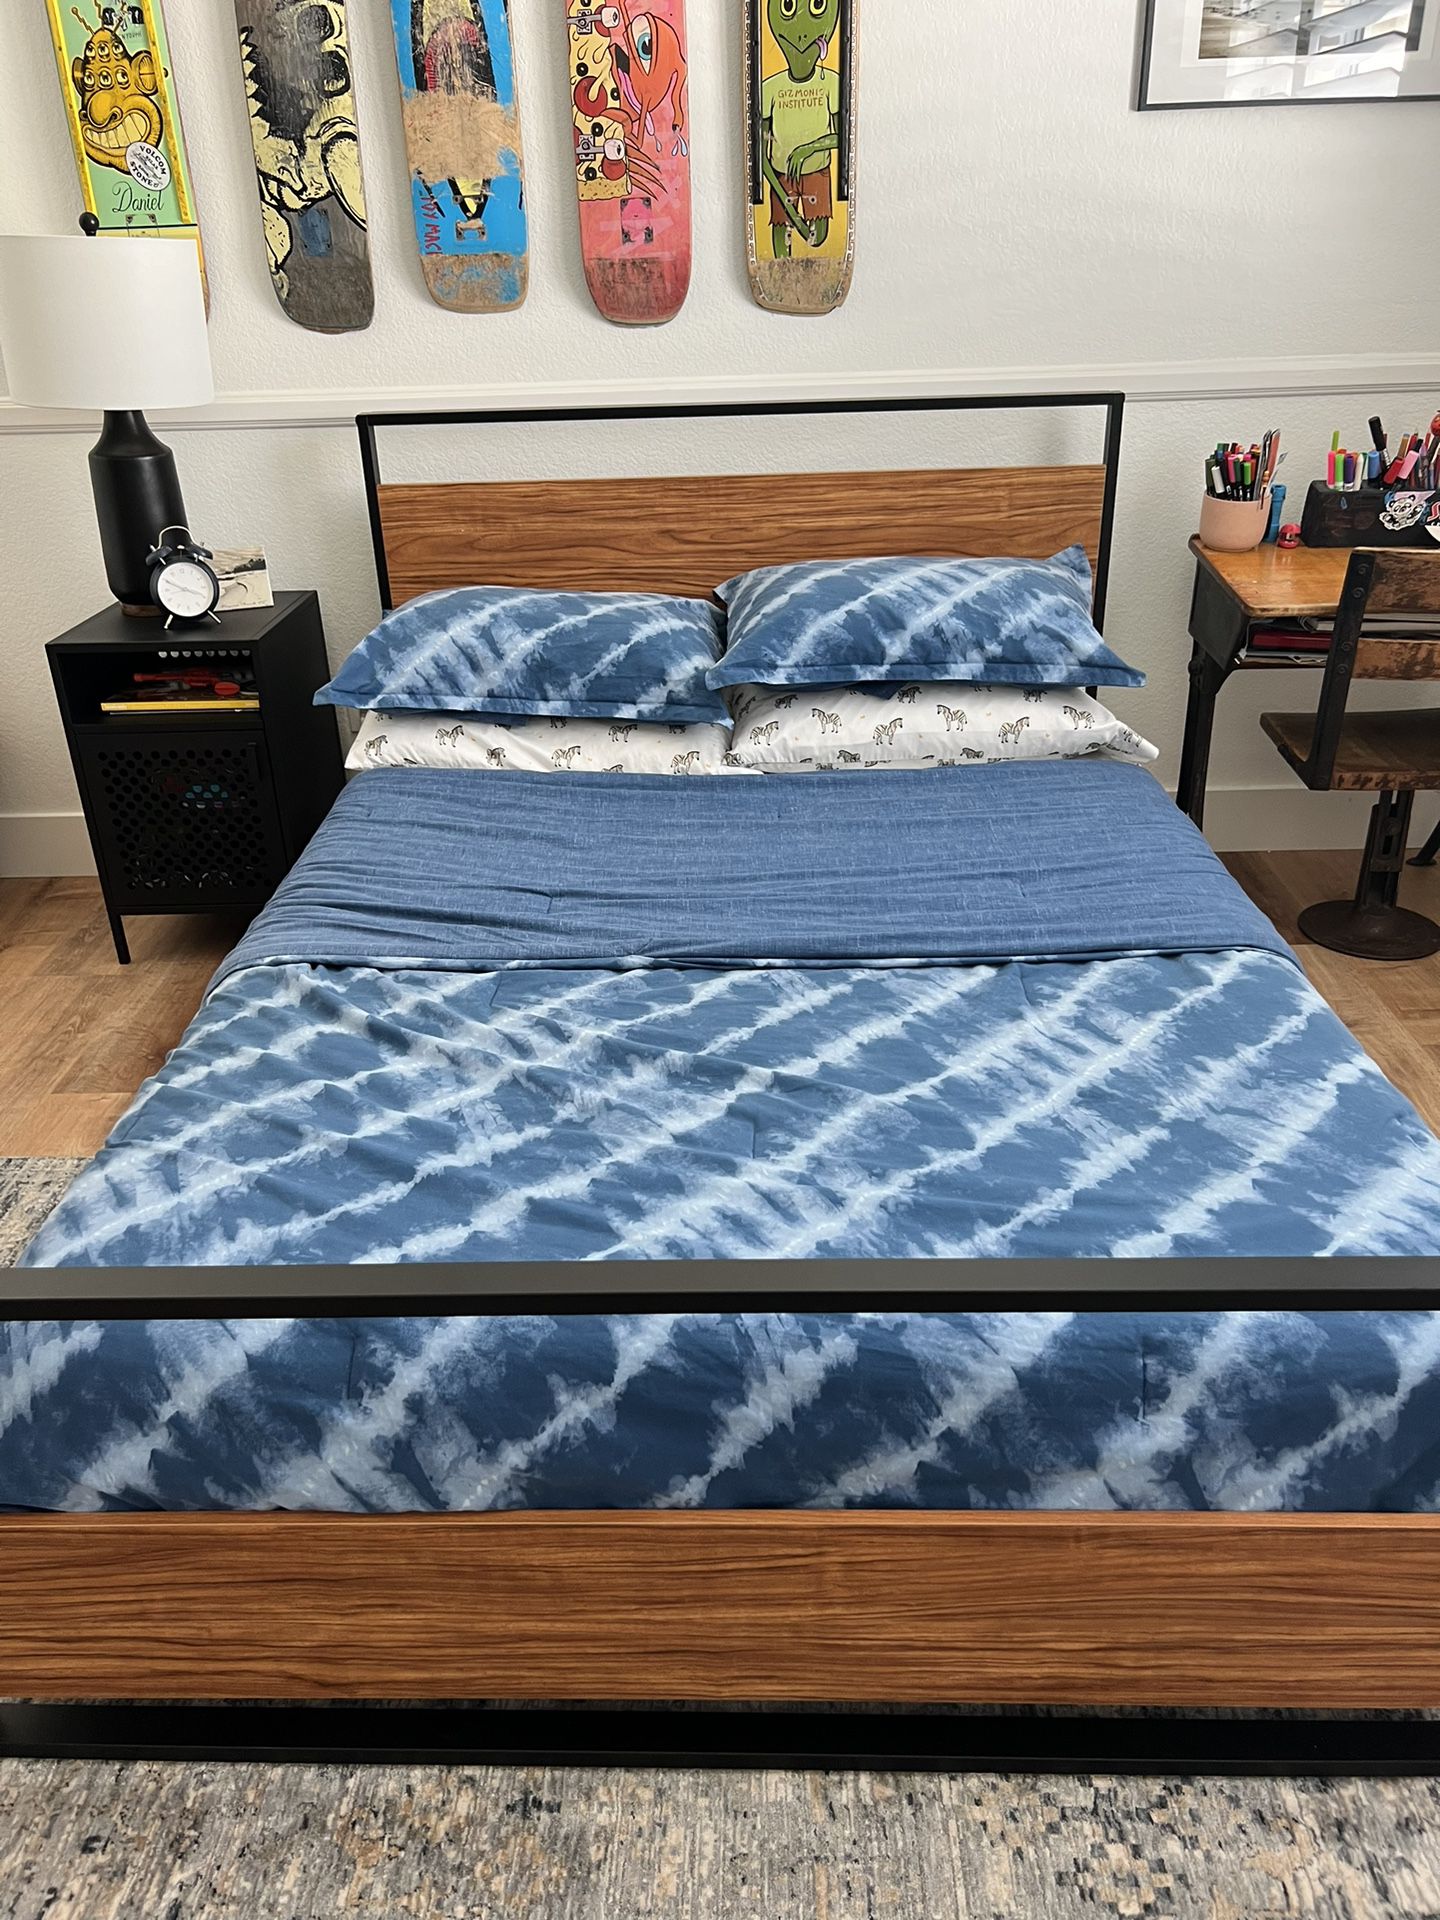 Full Size Bed Frame